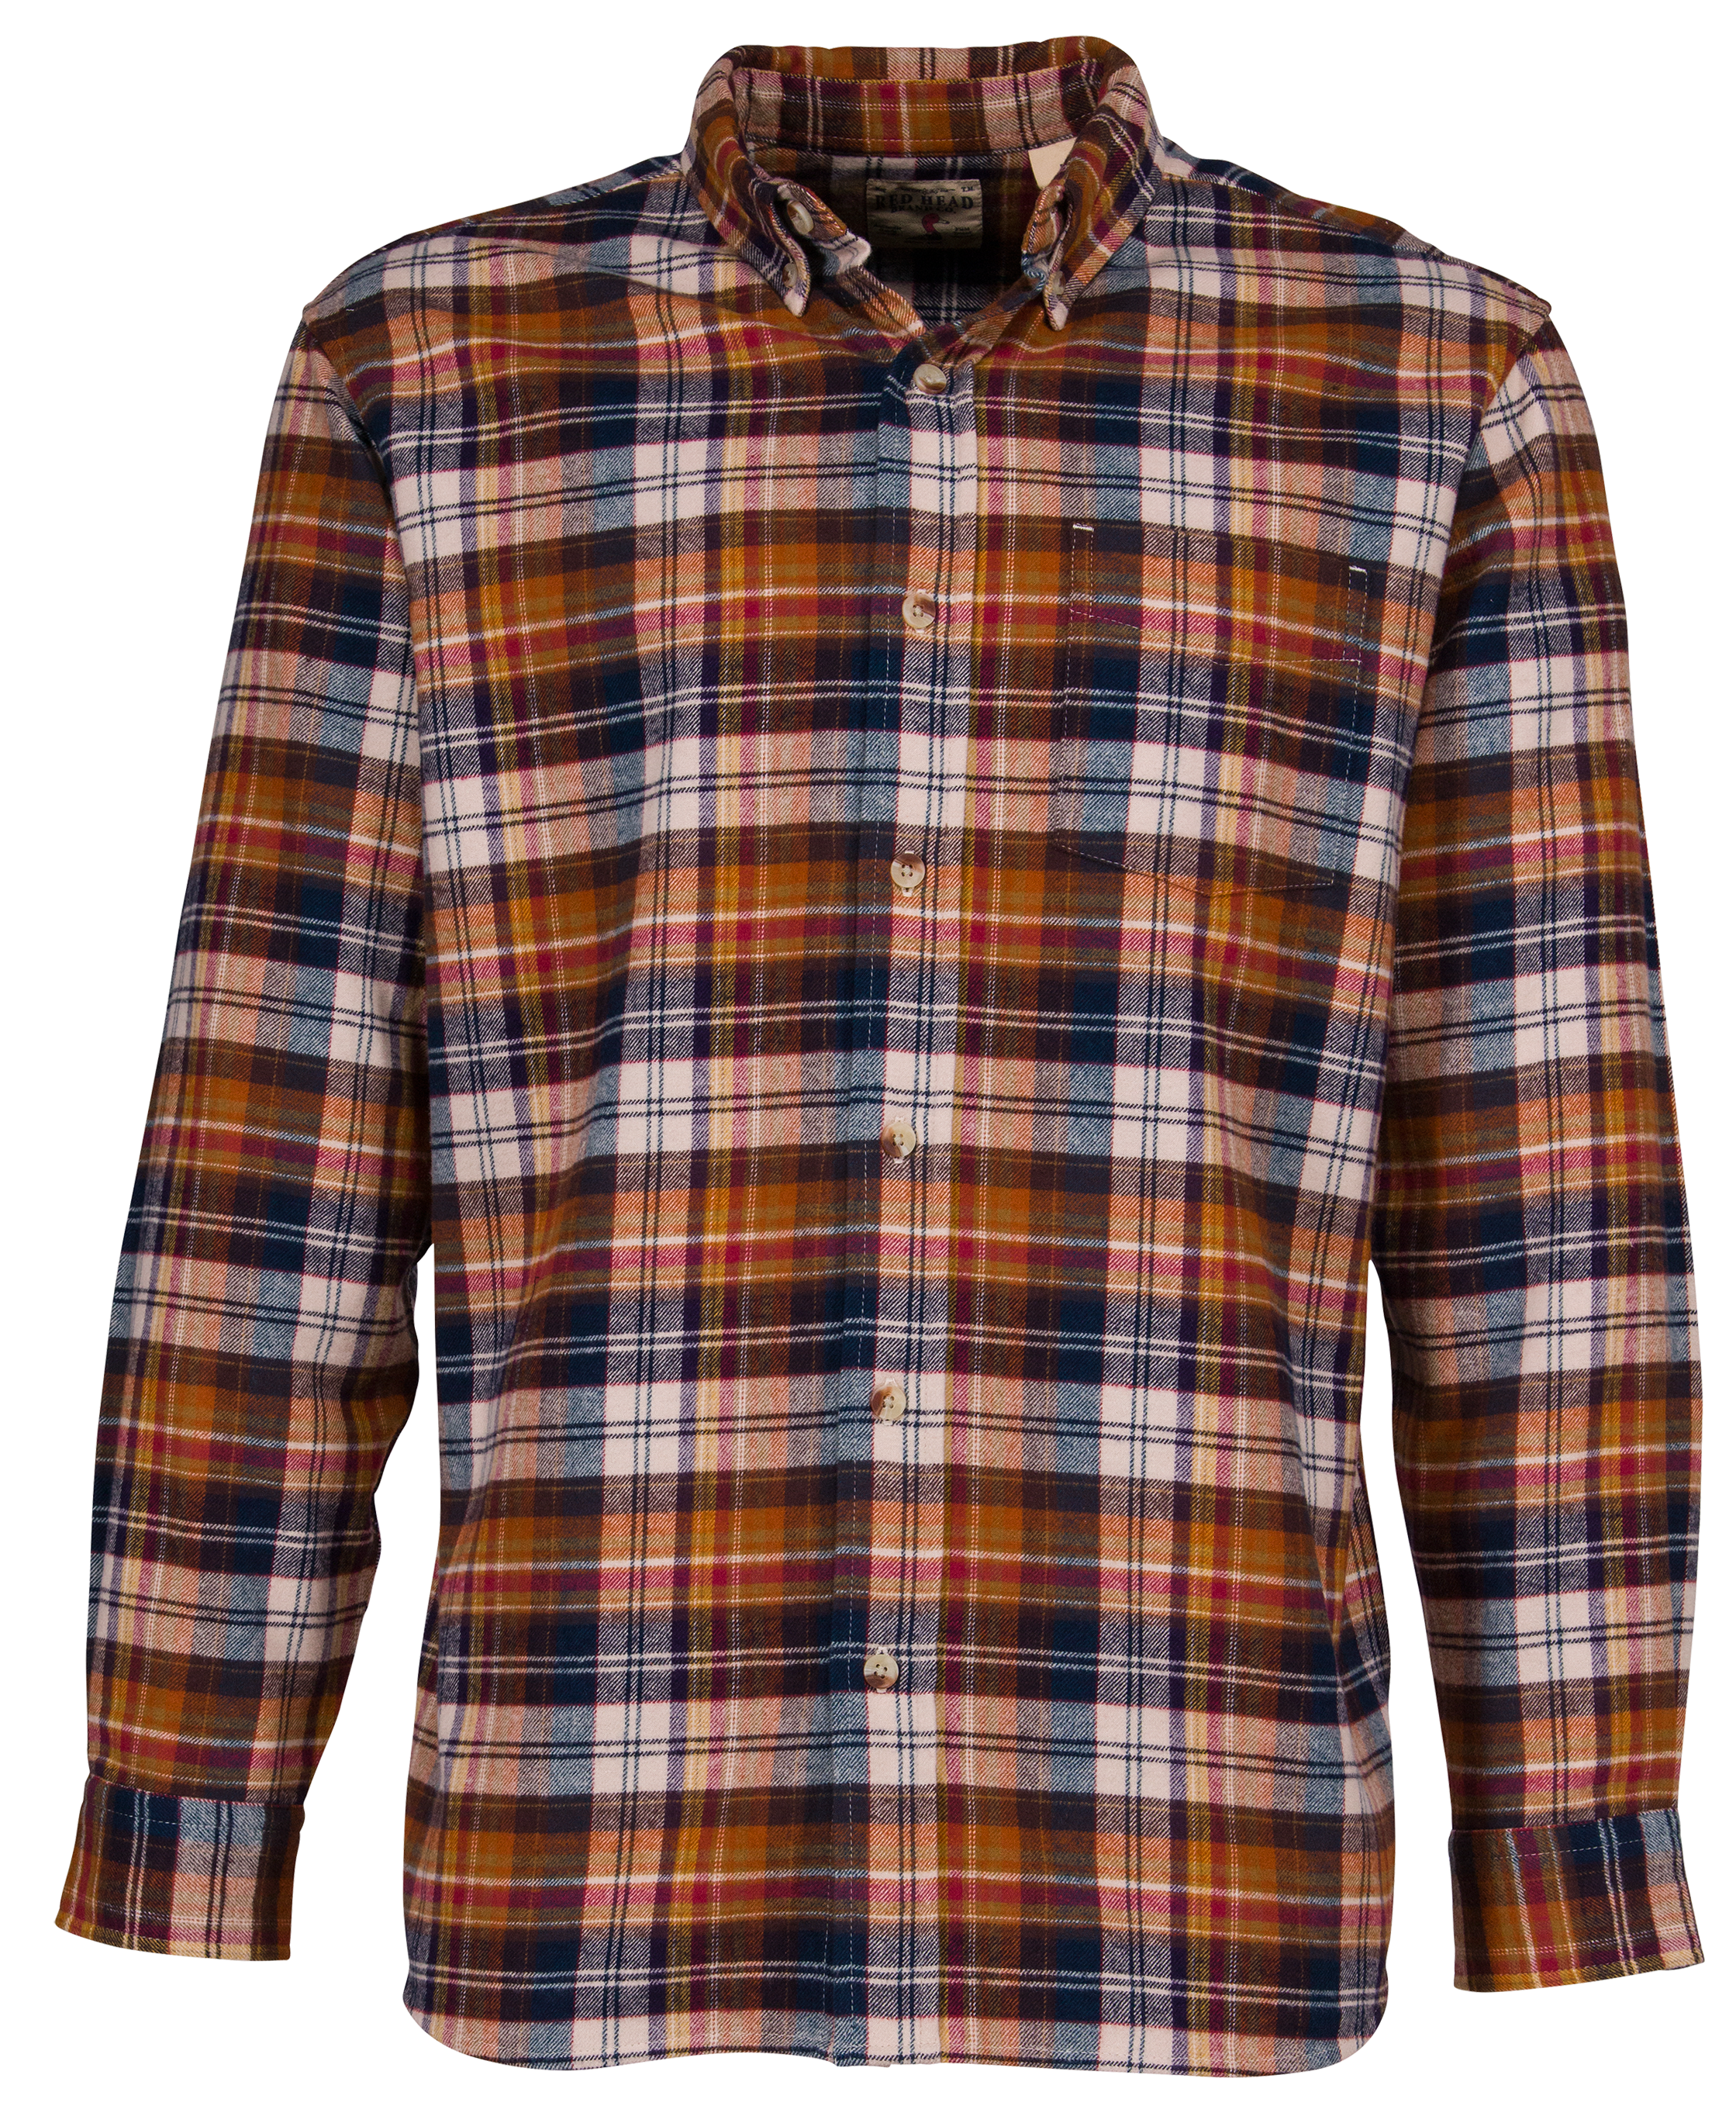 Plaid flannel shirt